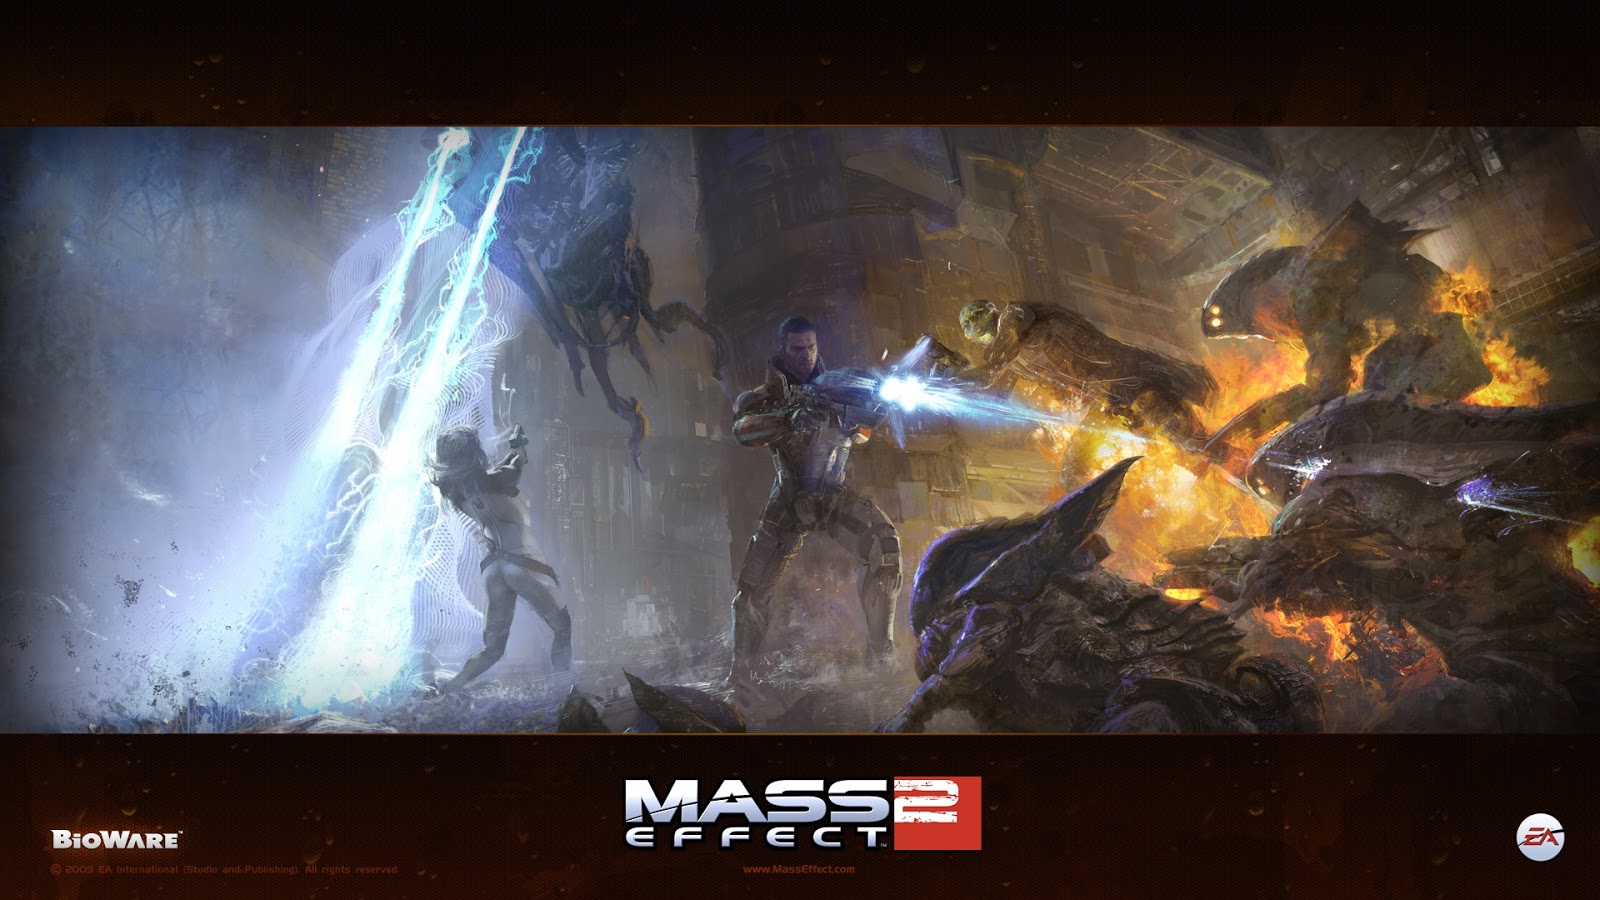 Mass Effect Shootout Game Image Full HD Desktop Wallpaper 1080p